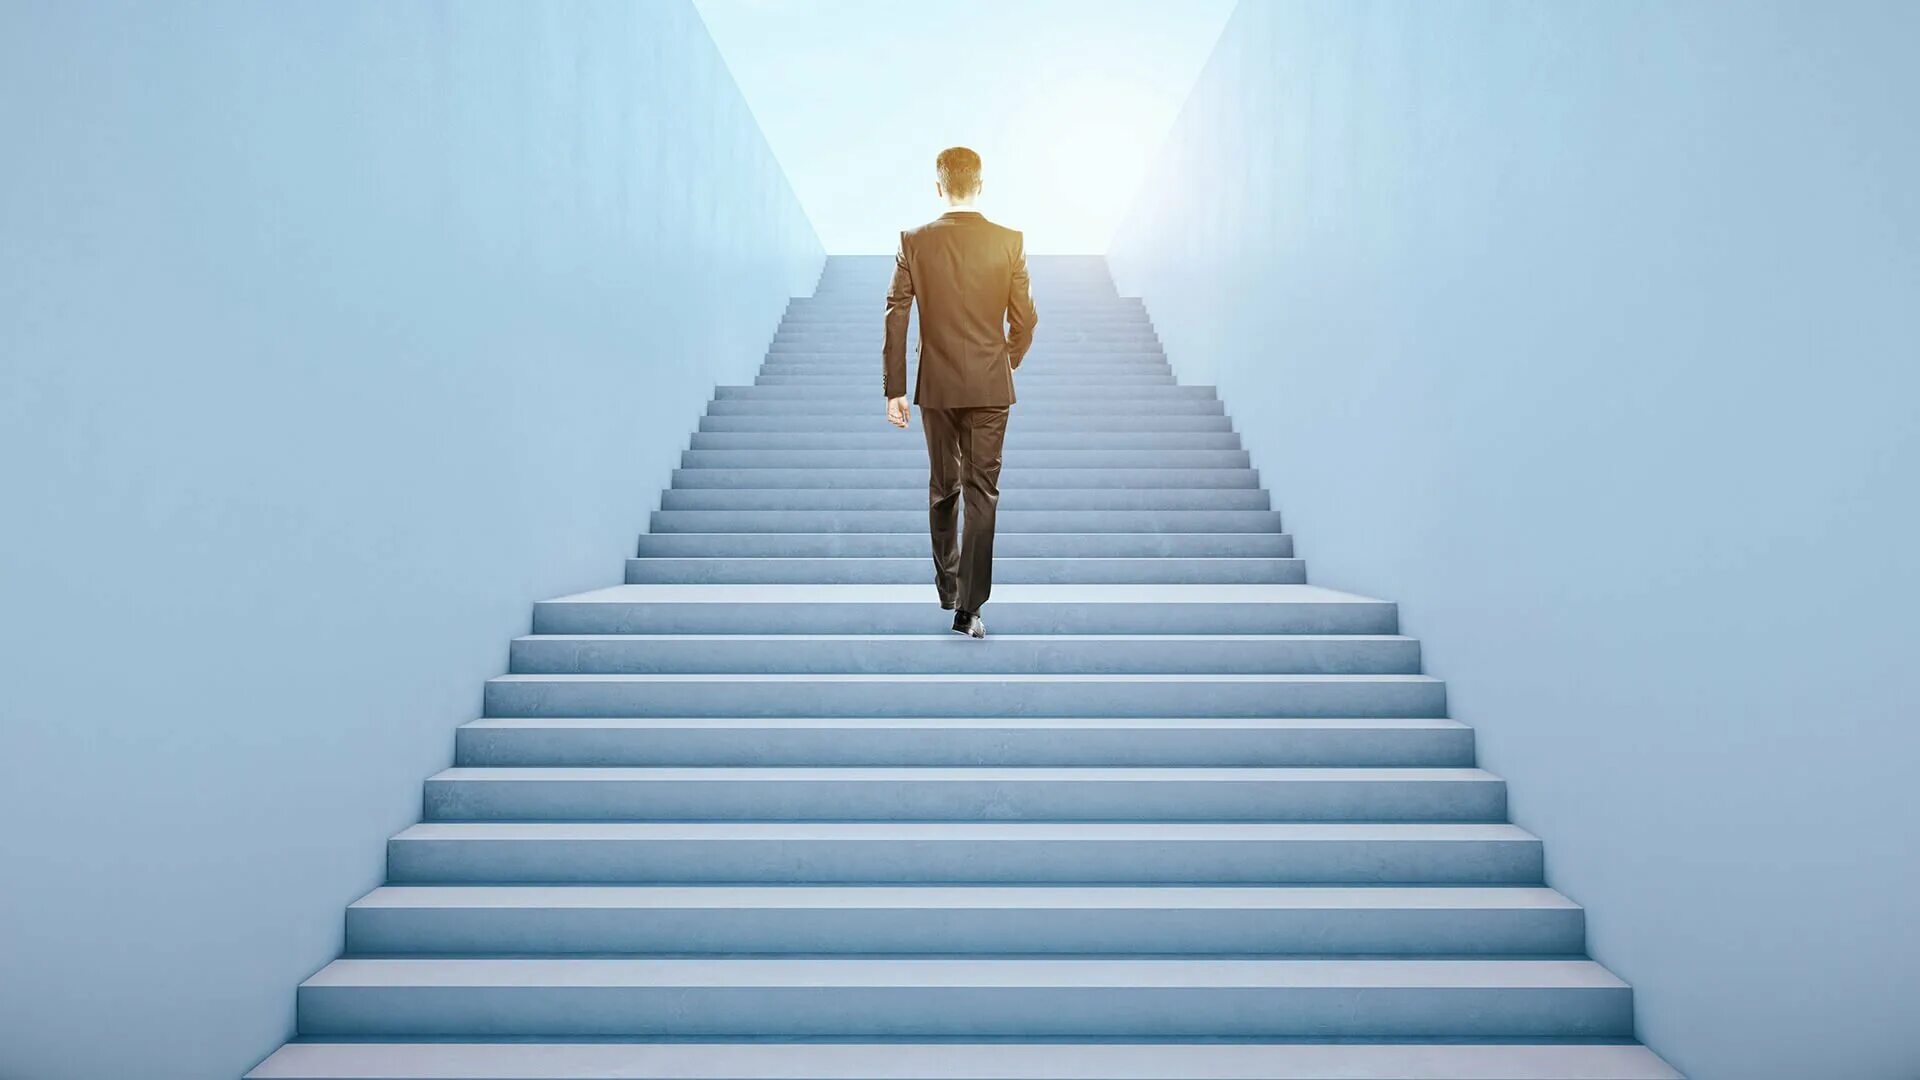 Вам нужно подняться по лестнице. Лестница идущая вверх. Карьерный рост. Бизнесмен на лестнице. Лестница карьеры.